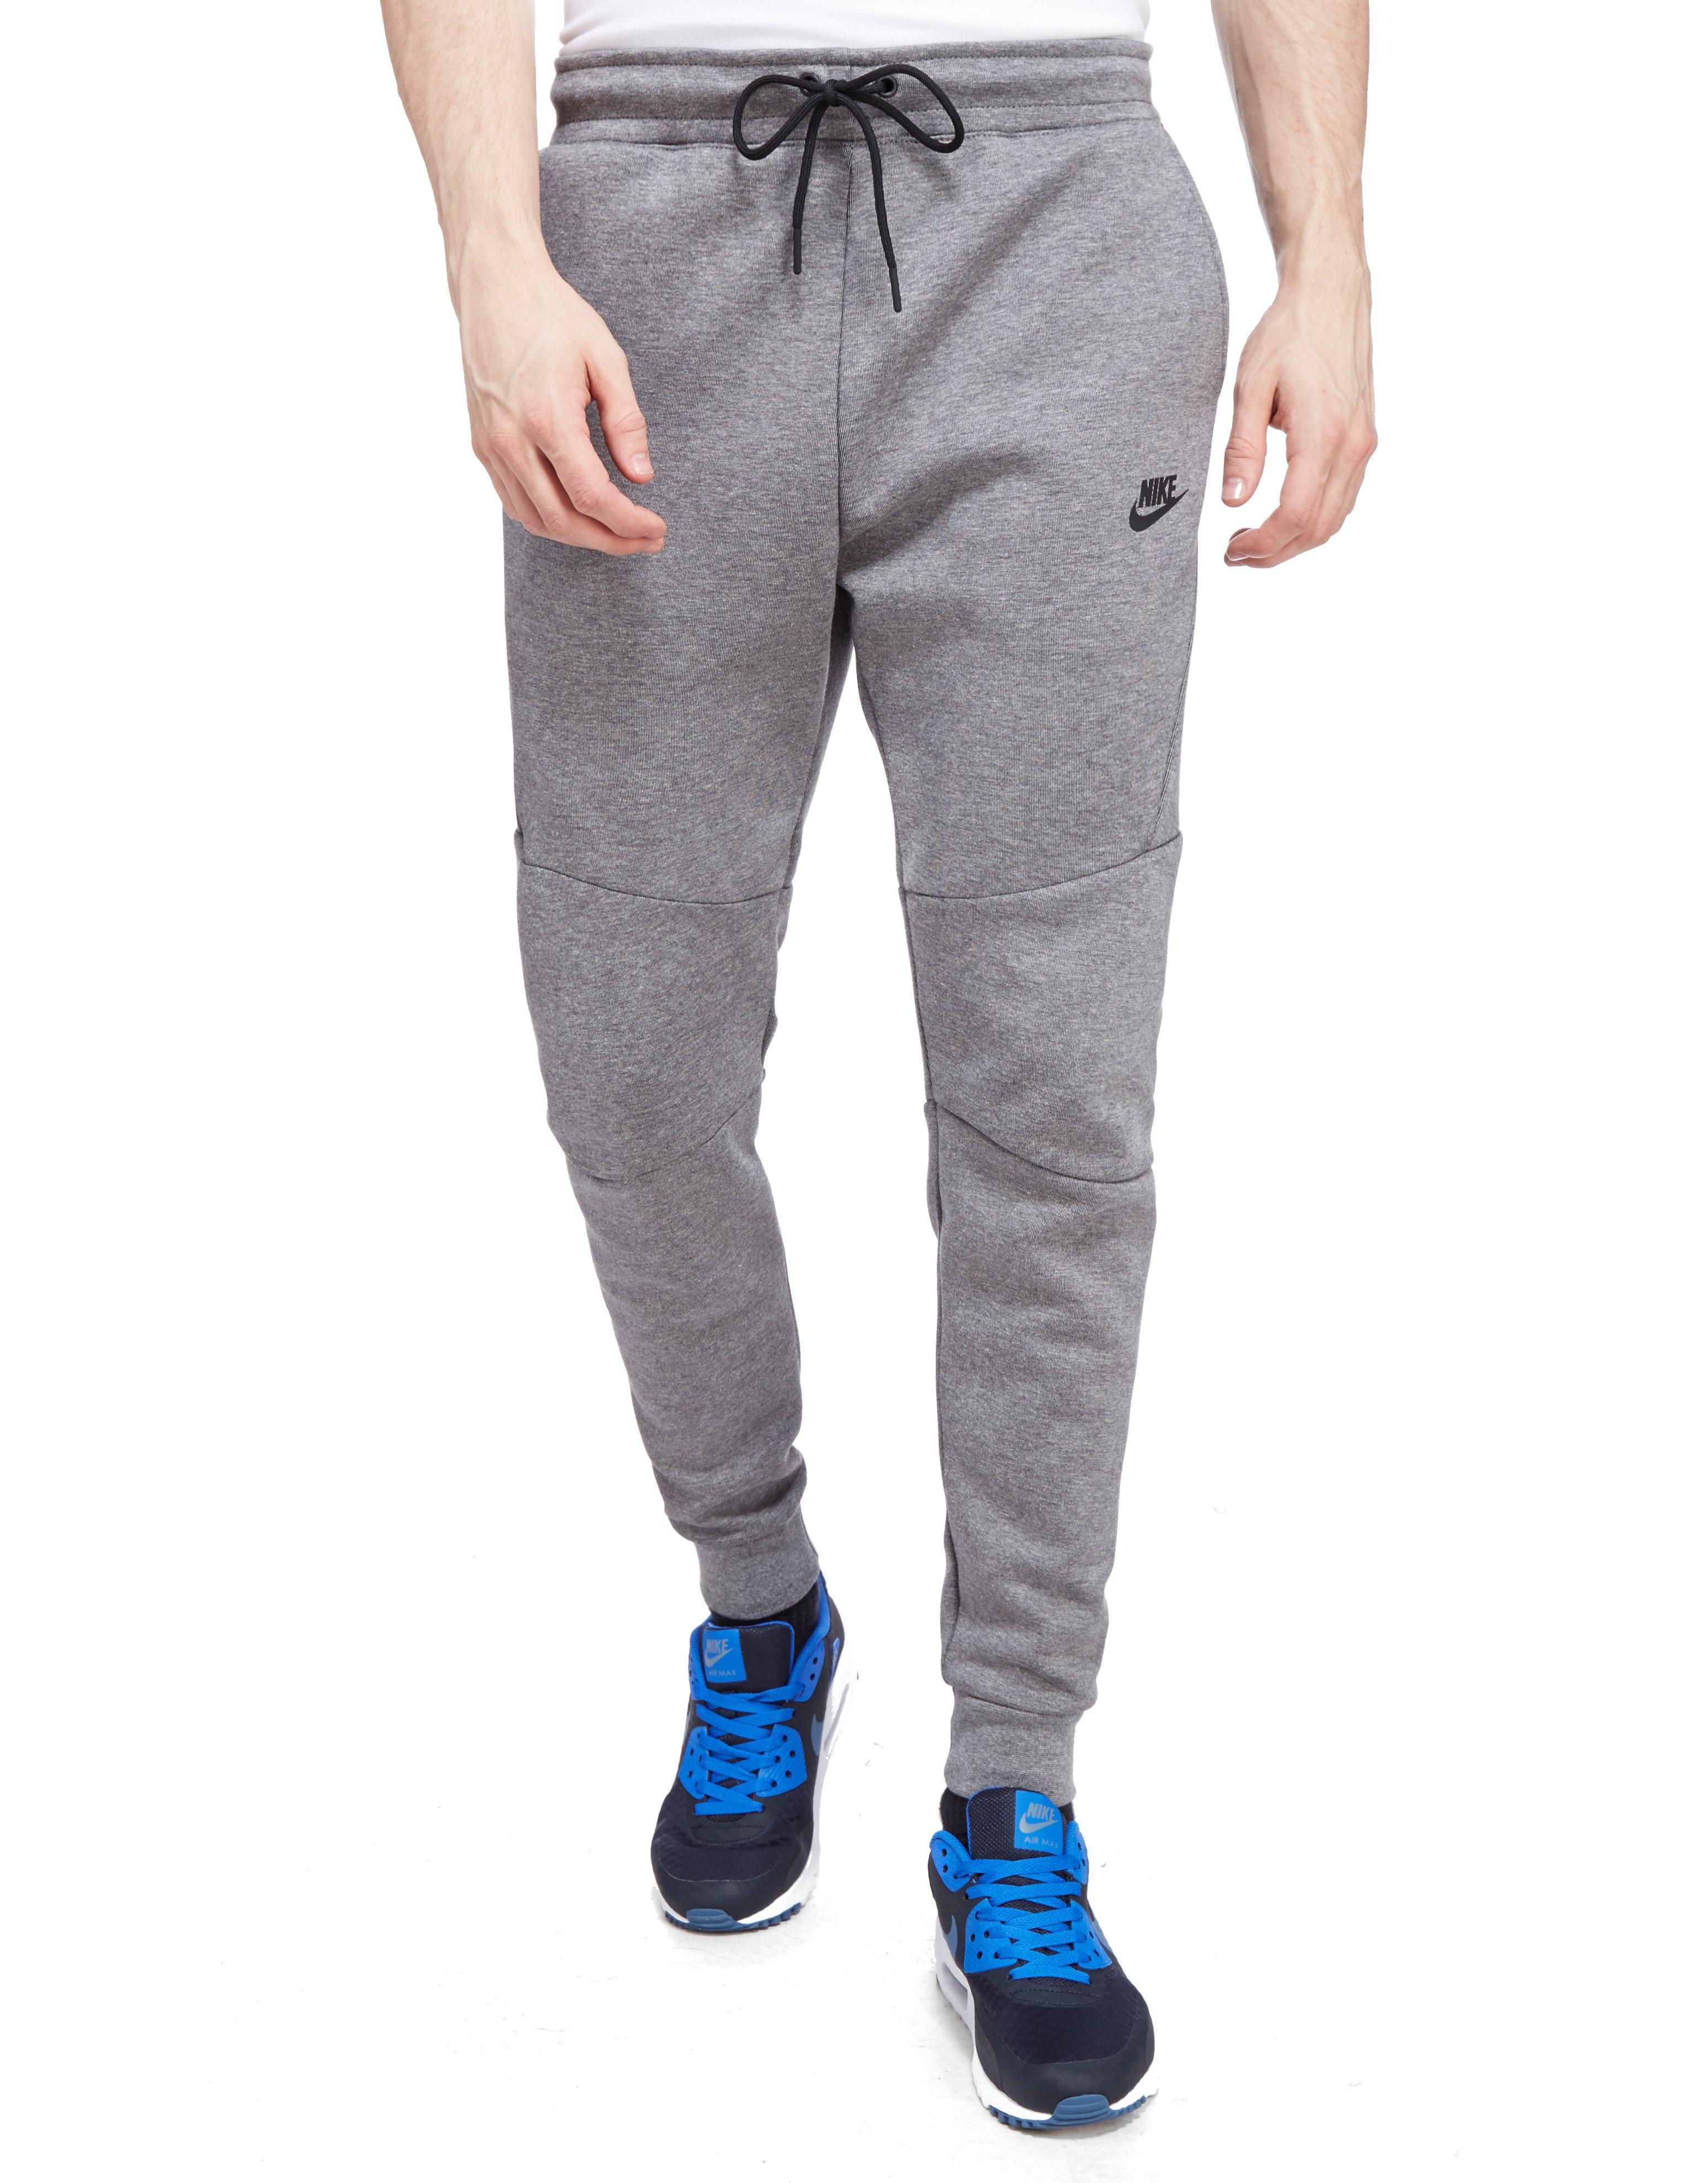 Nike Tech Fleece Joggers in Grey (Gray) for Men - Lyst